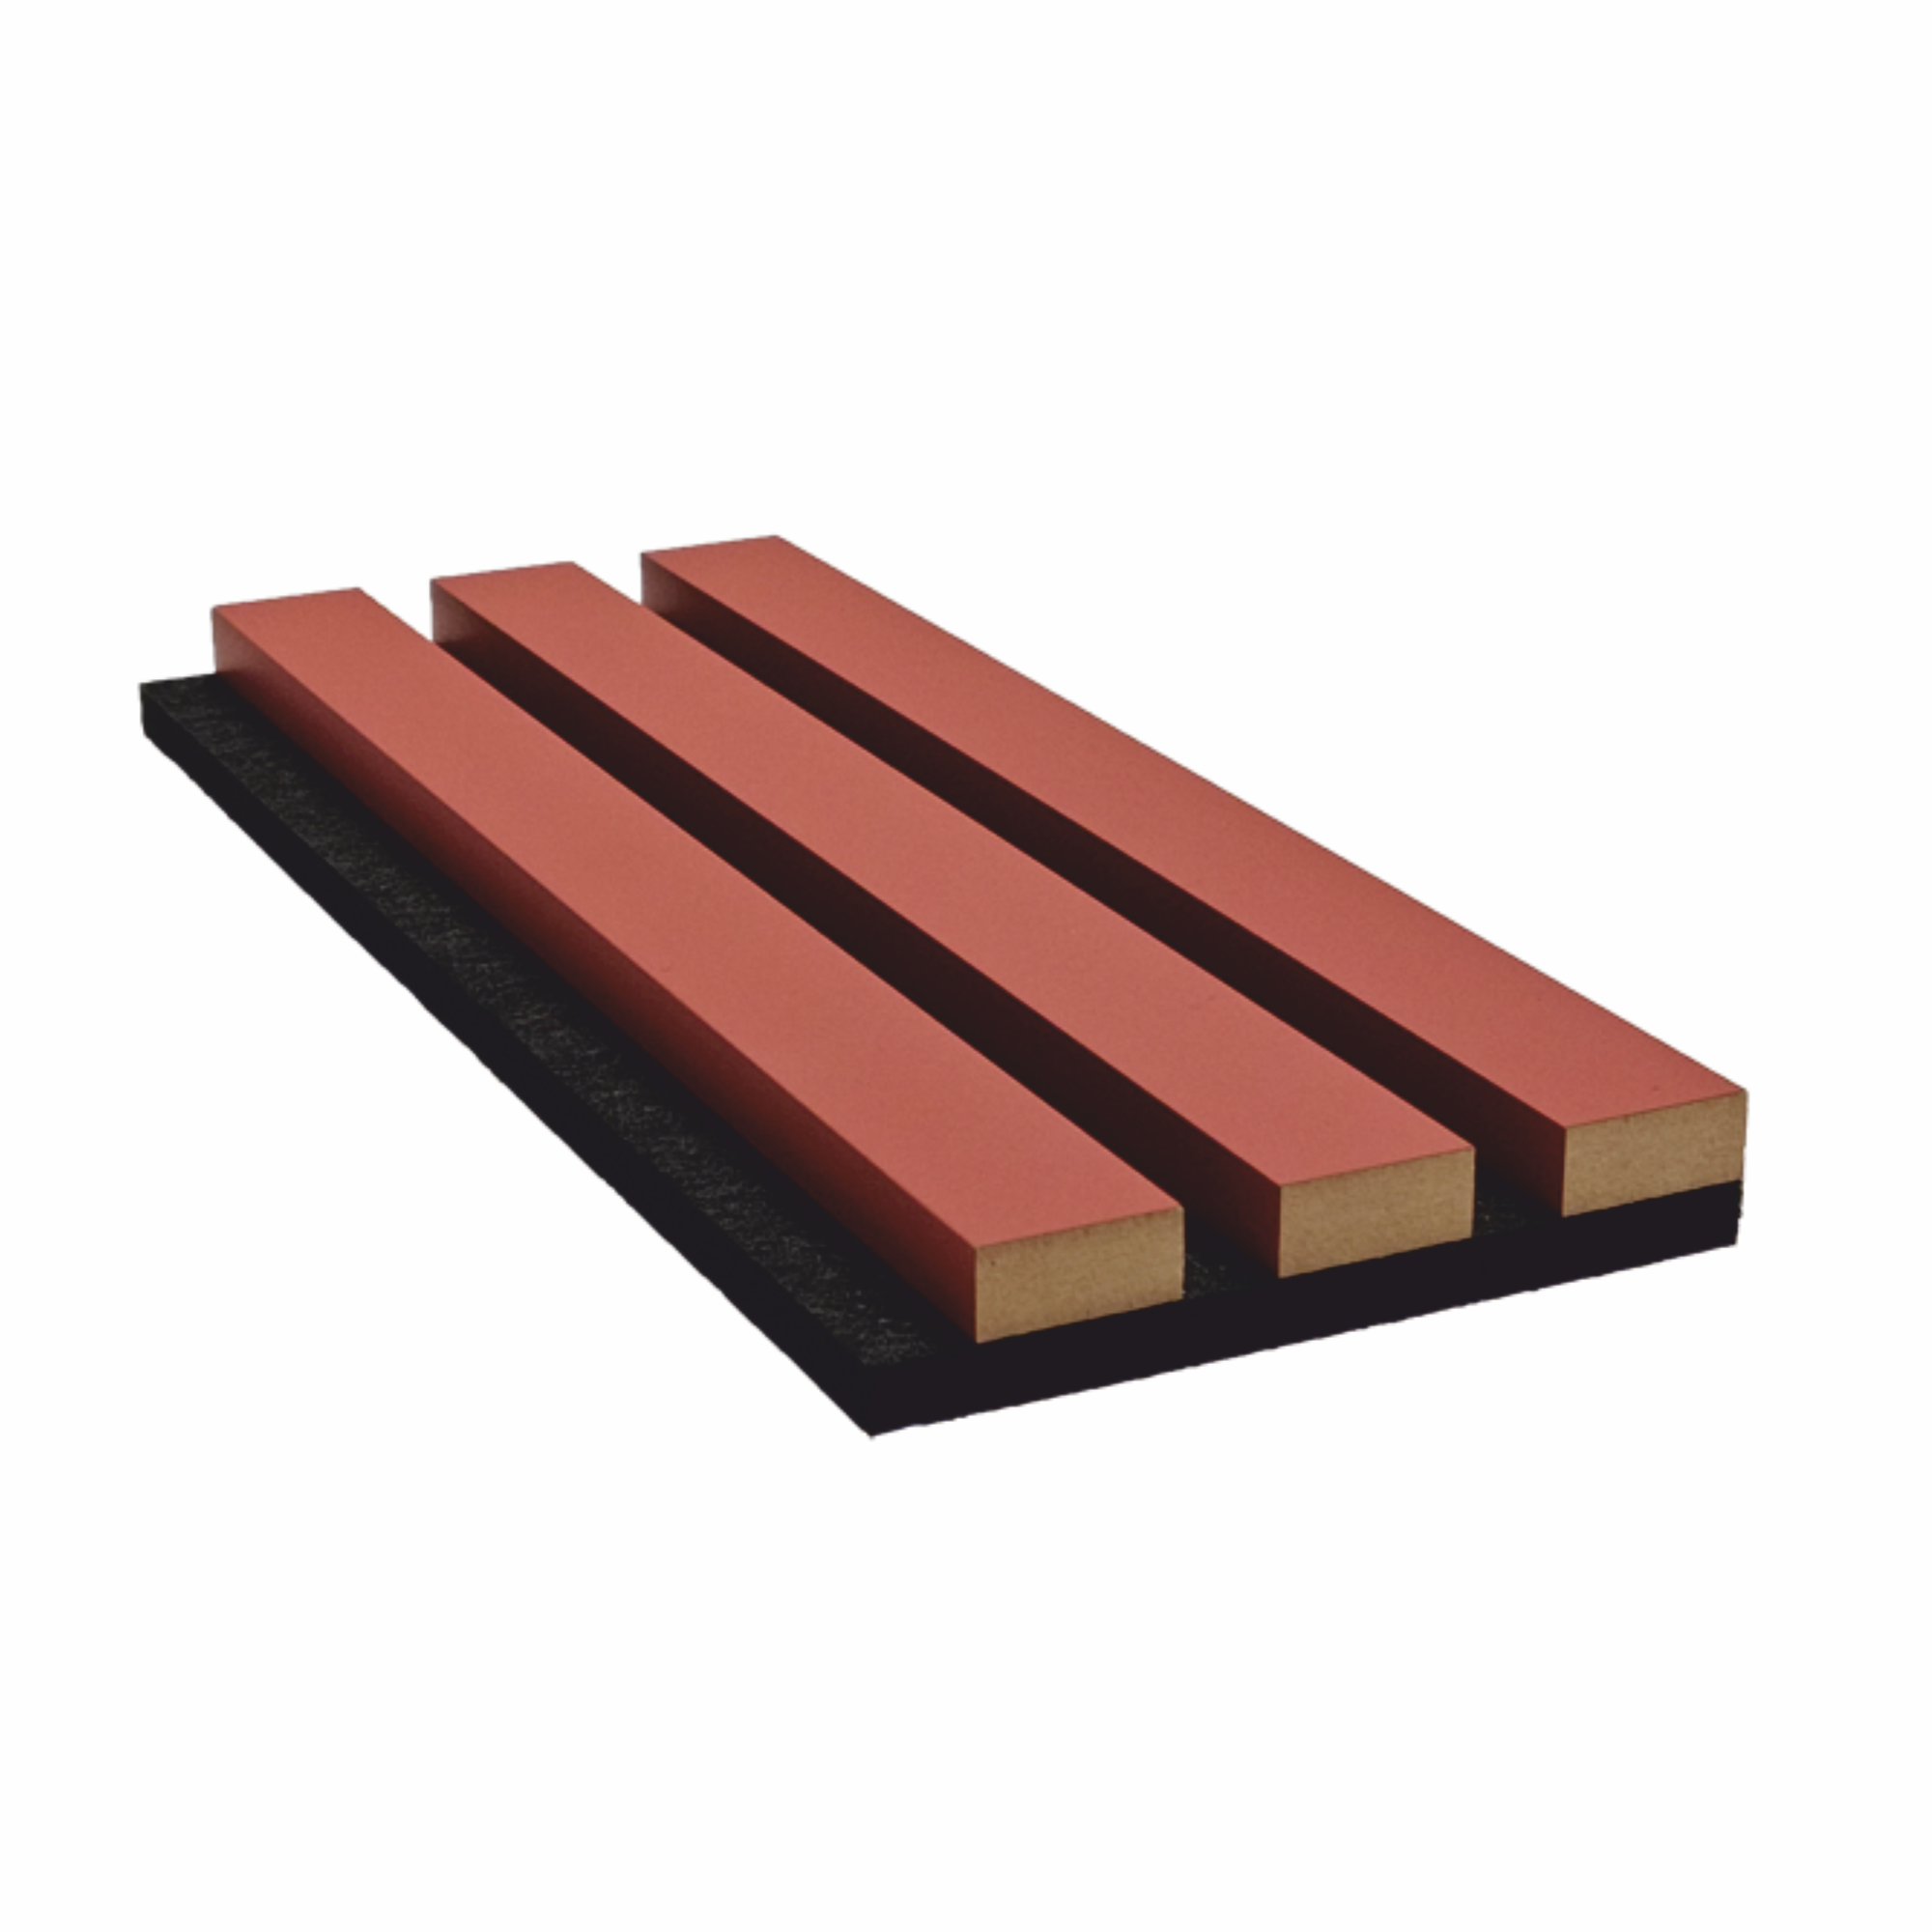 Образец акустической декоративной панели Wood App Classic Терракот красный